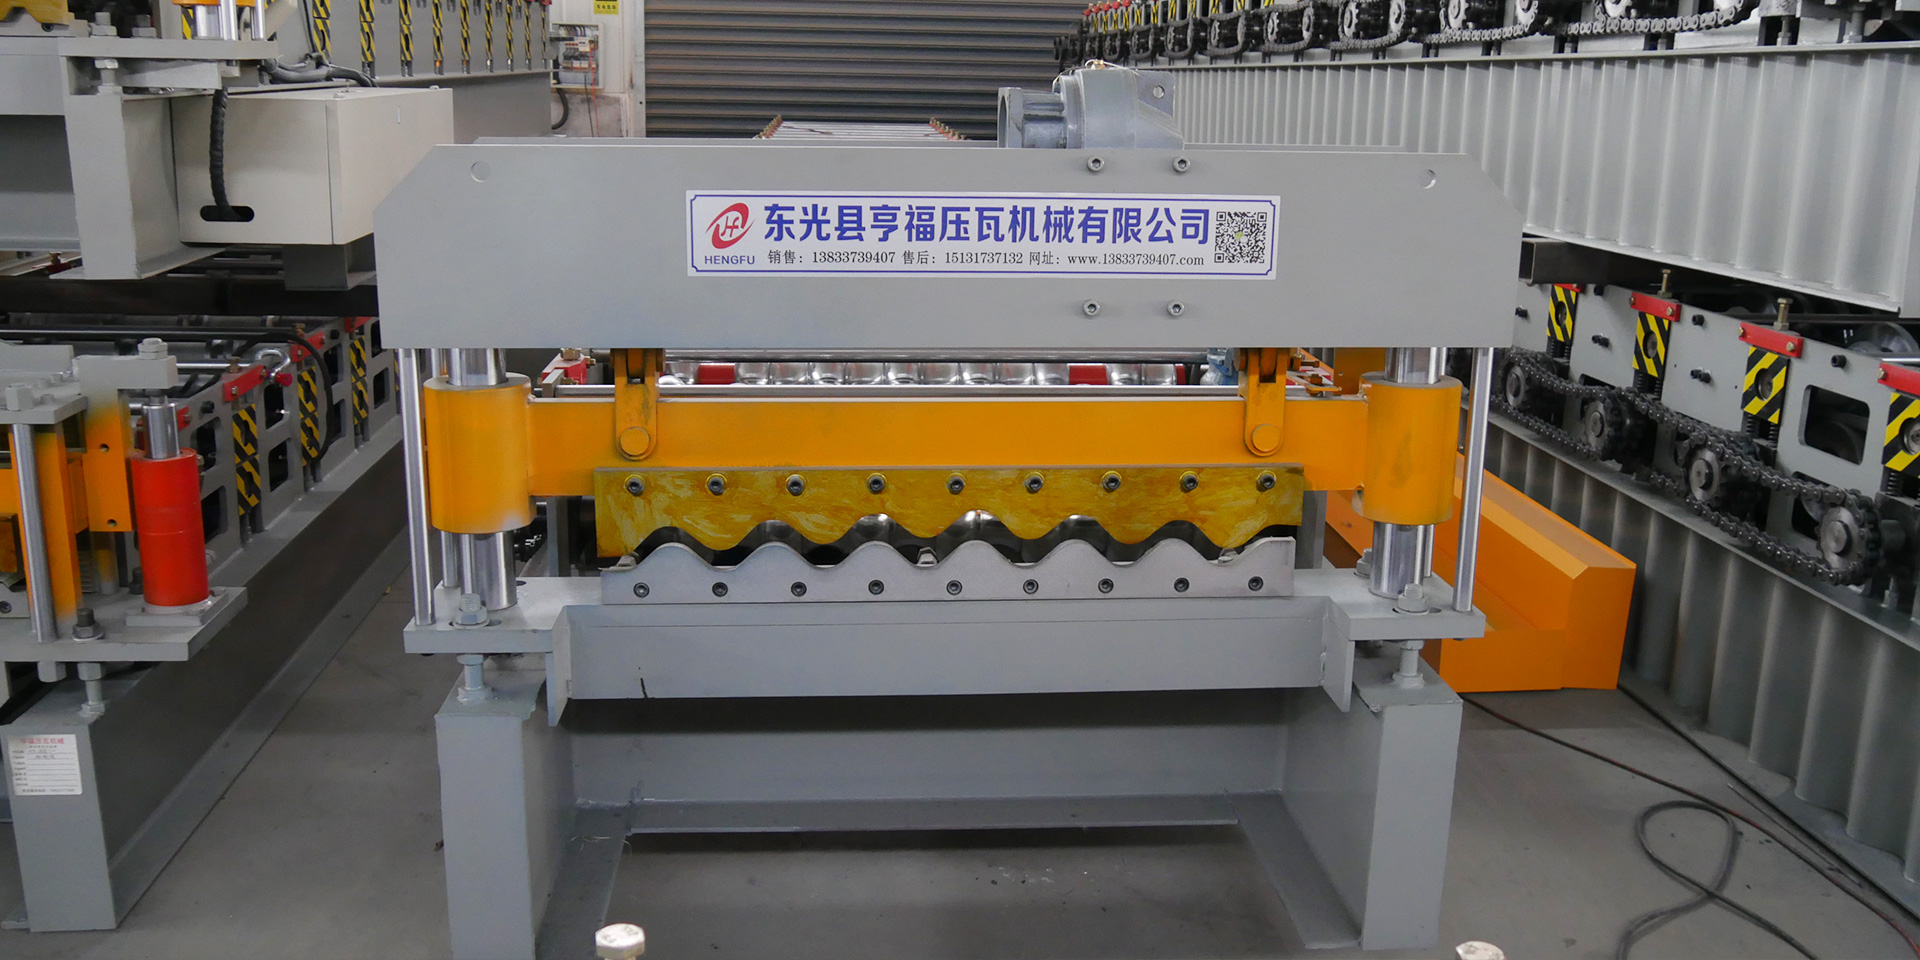 Dongguang County Hengfu Tile Press Machinery Co., Ltd.